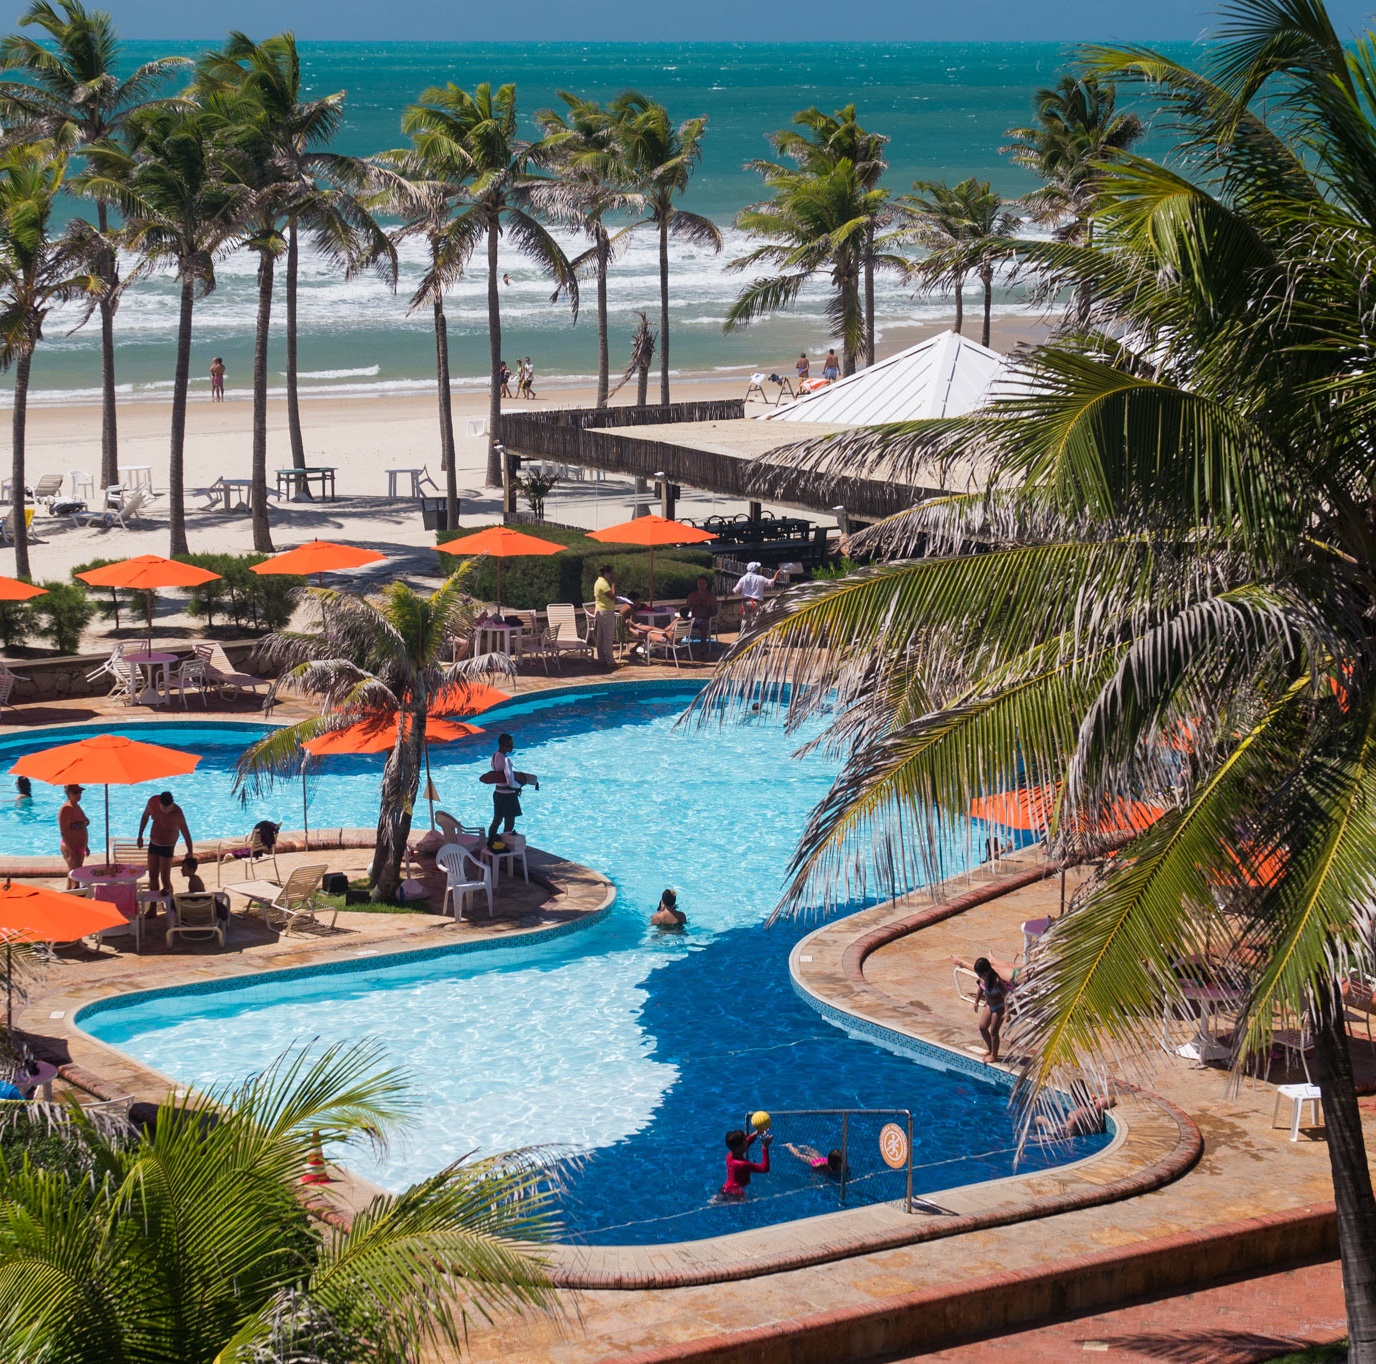 Conheça mais sobre o Oceani Beach Park Hotel